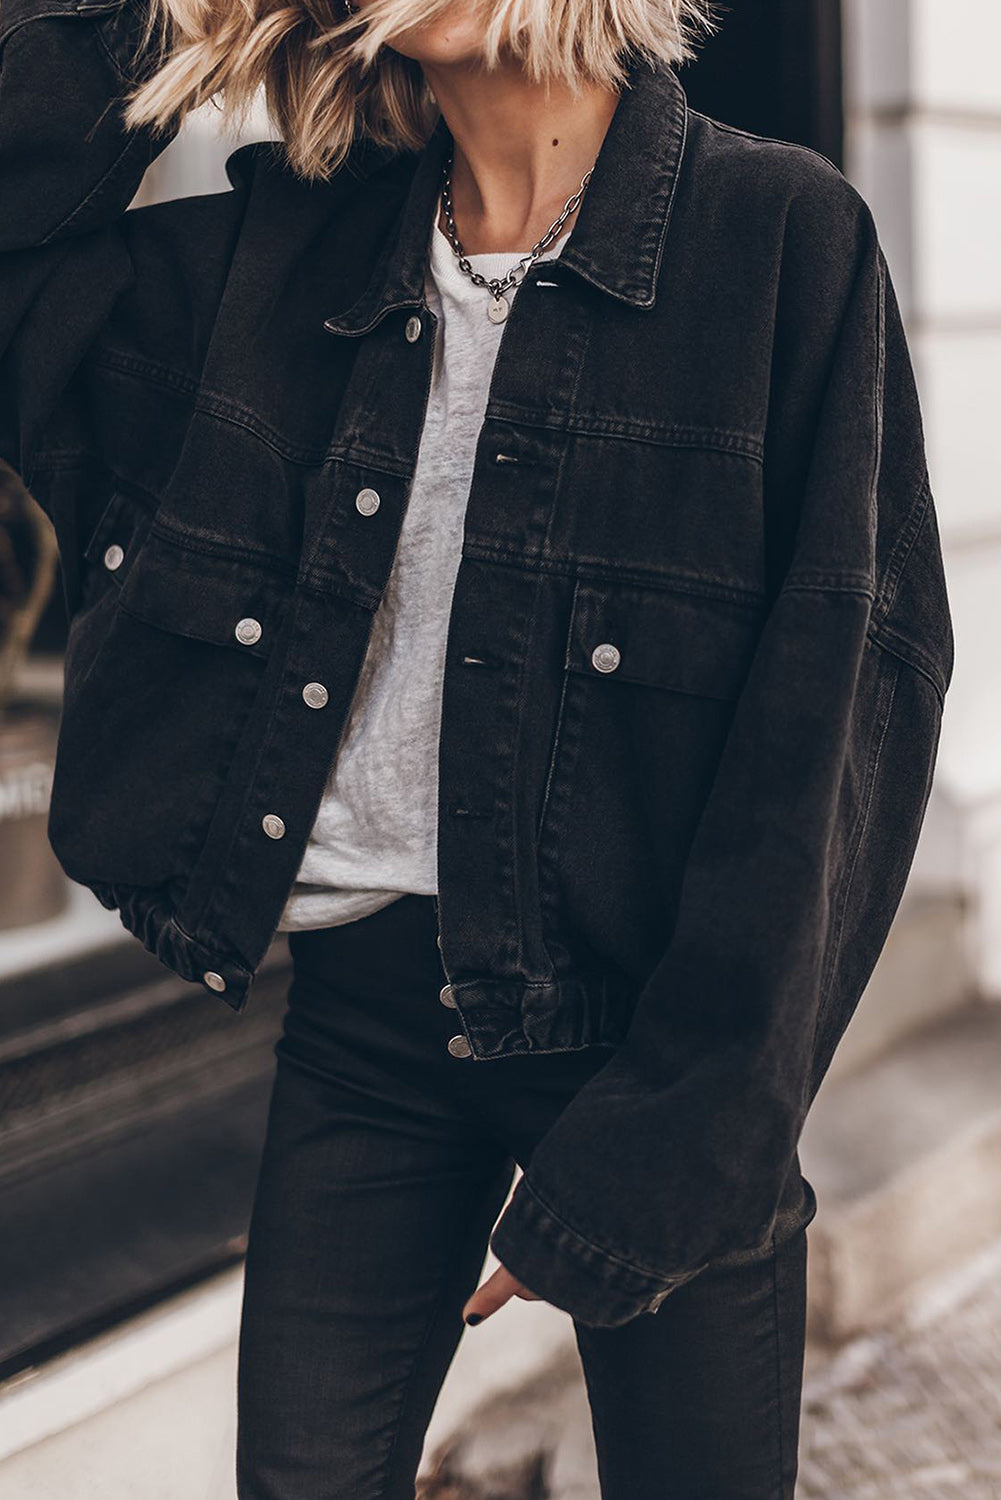 Crna traper jakna na ramena s preklopnim džepom i metalnim gumbima